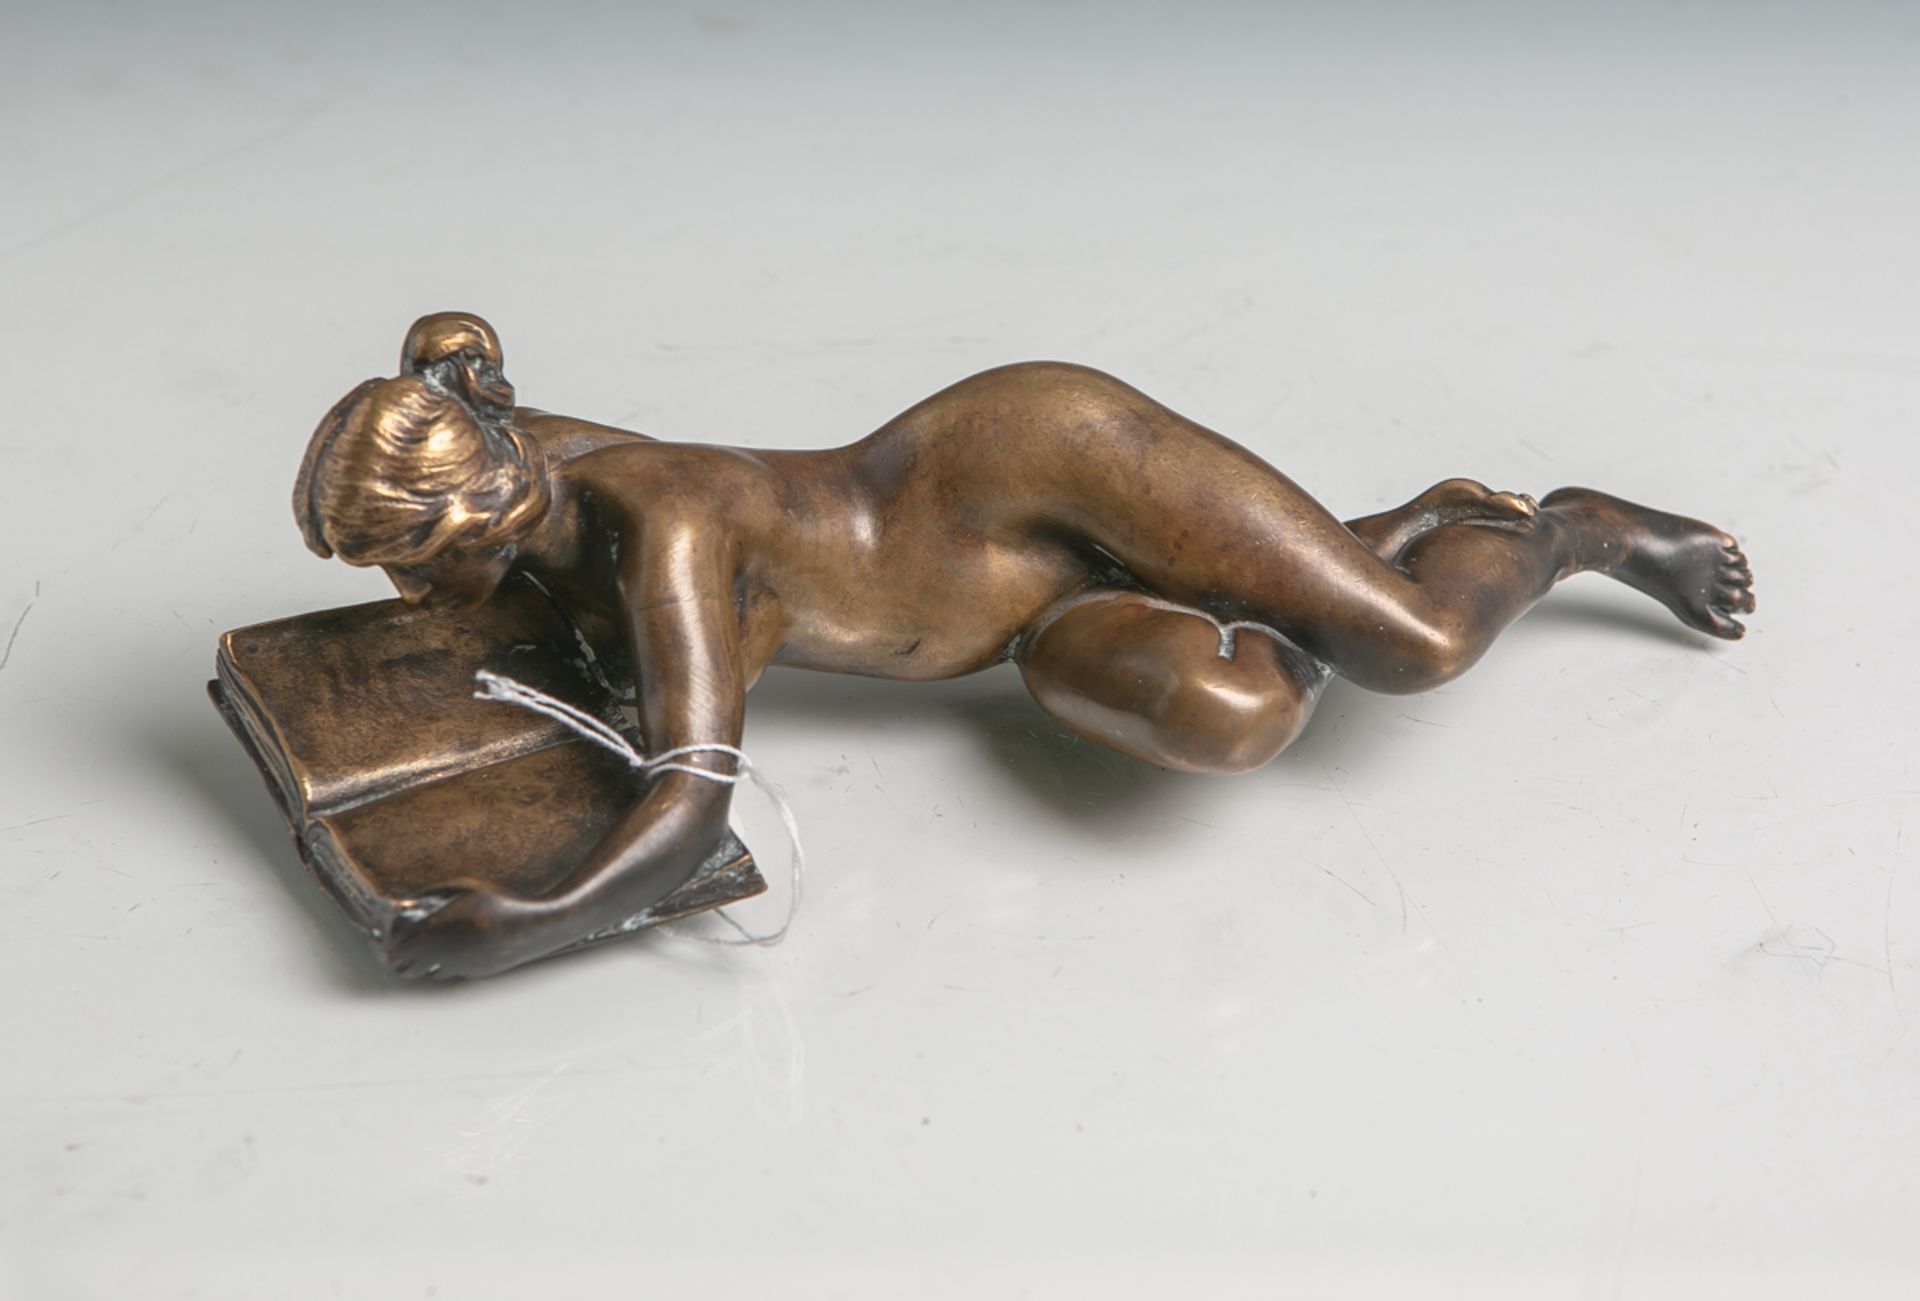 Unbekannter Künstler (wohl um 1900), weiblicher liegender Akt ein Buch lesend, Bronze,patiniert,